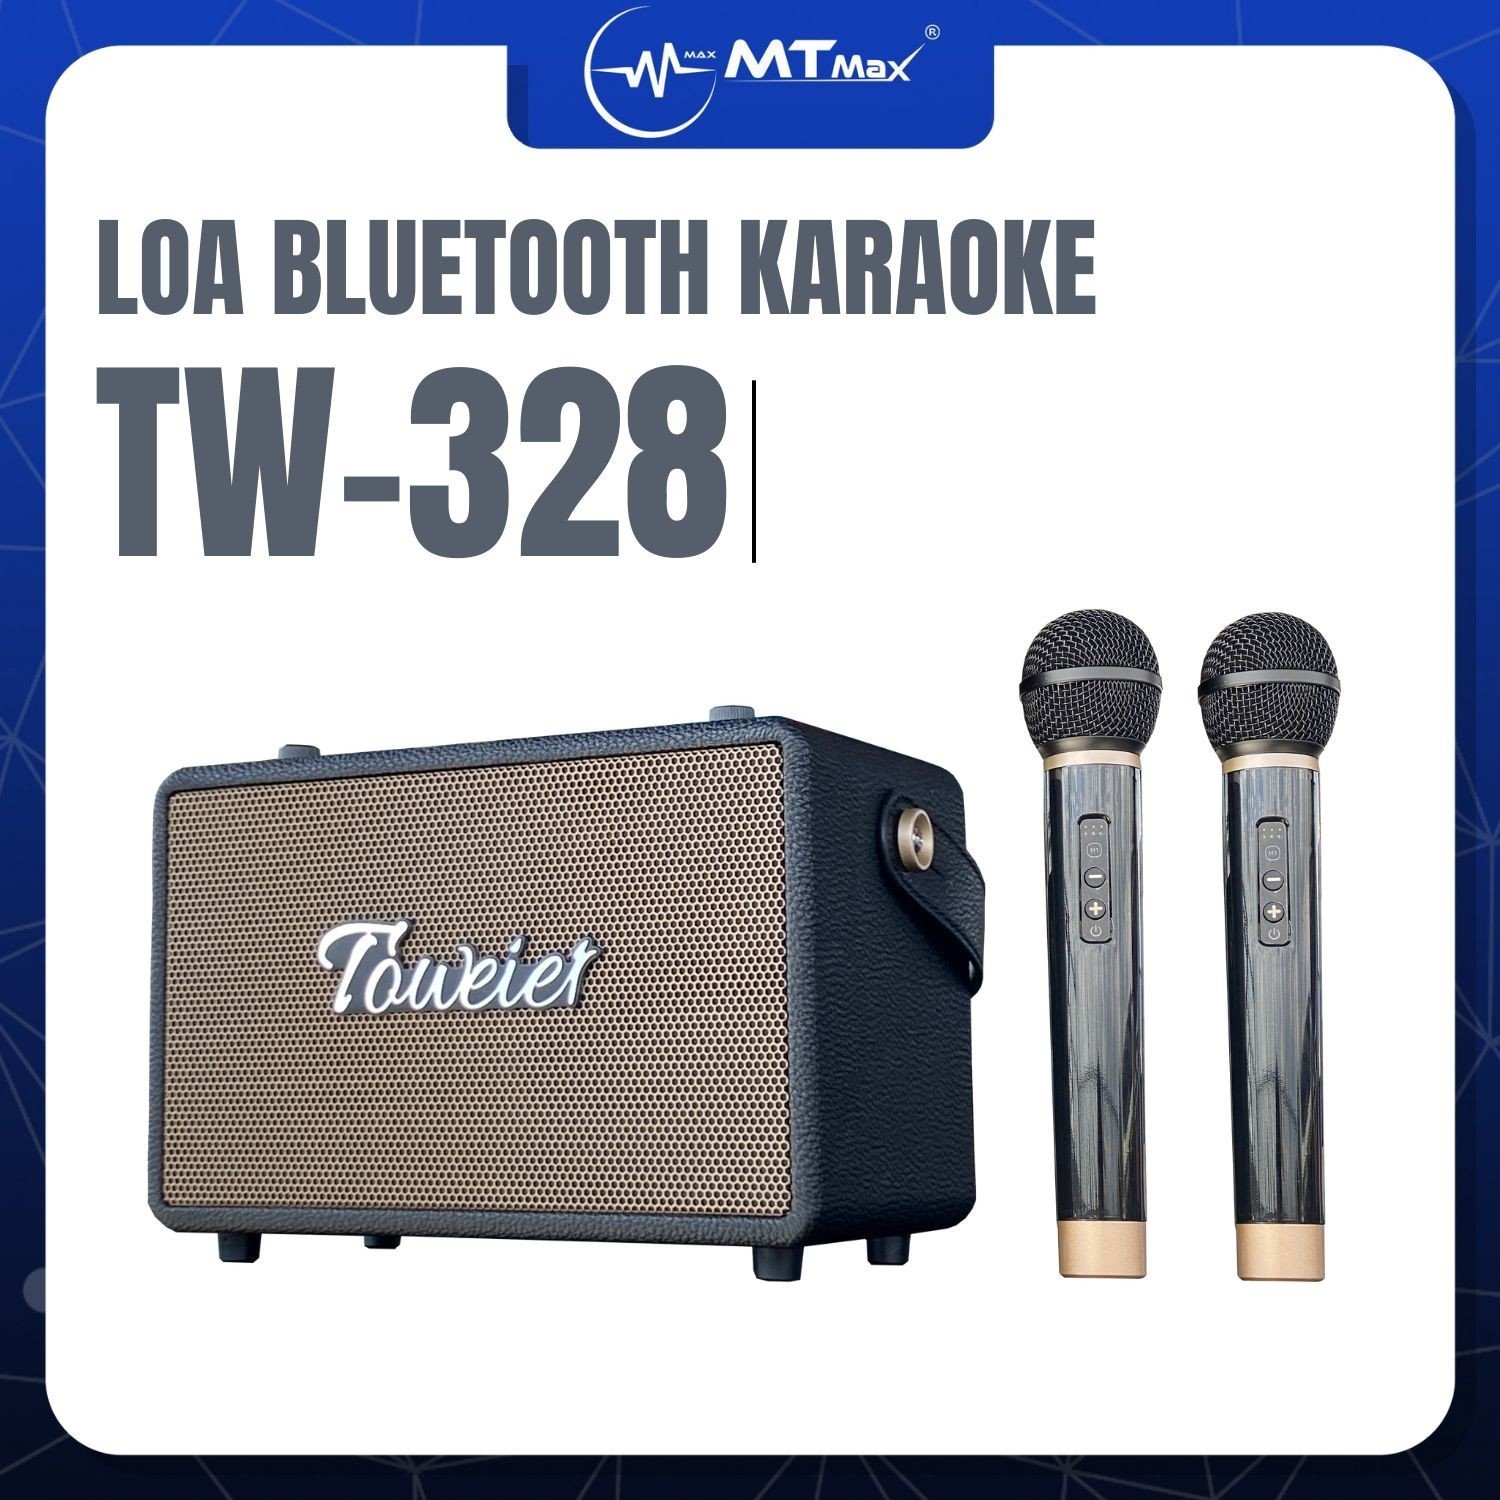 Loa Bluetooth Karaoke TW328 – Loa Xách Tay Kèm 2 Micro Không Dây Sang Trọng, Nhỏ Gọn Dễ Di Chuyển, Mang Du Lịch, Cắm Trại...